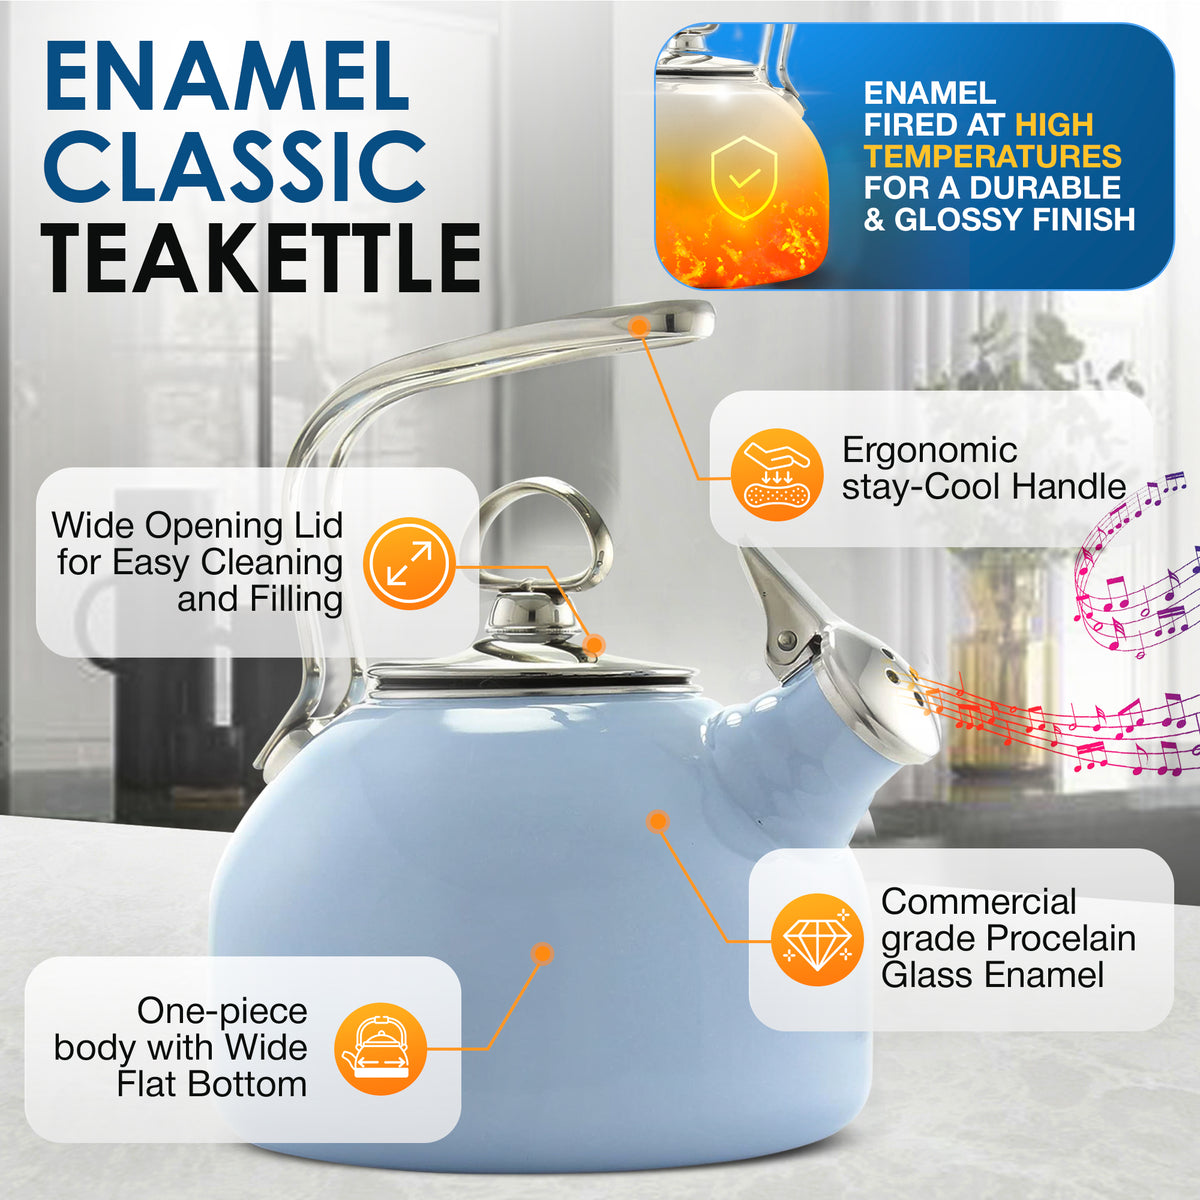 Enamel-on-Steel Classic Teakettle (1.8 Qt.) – Chantal